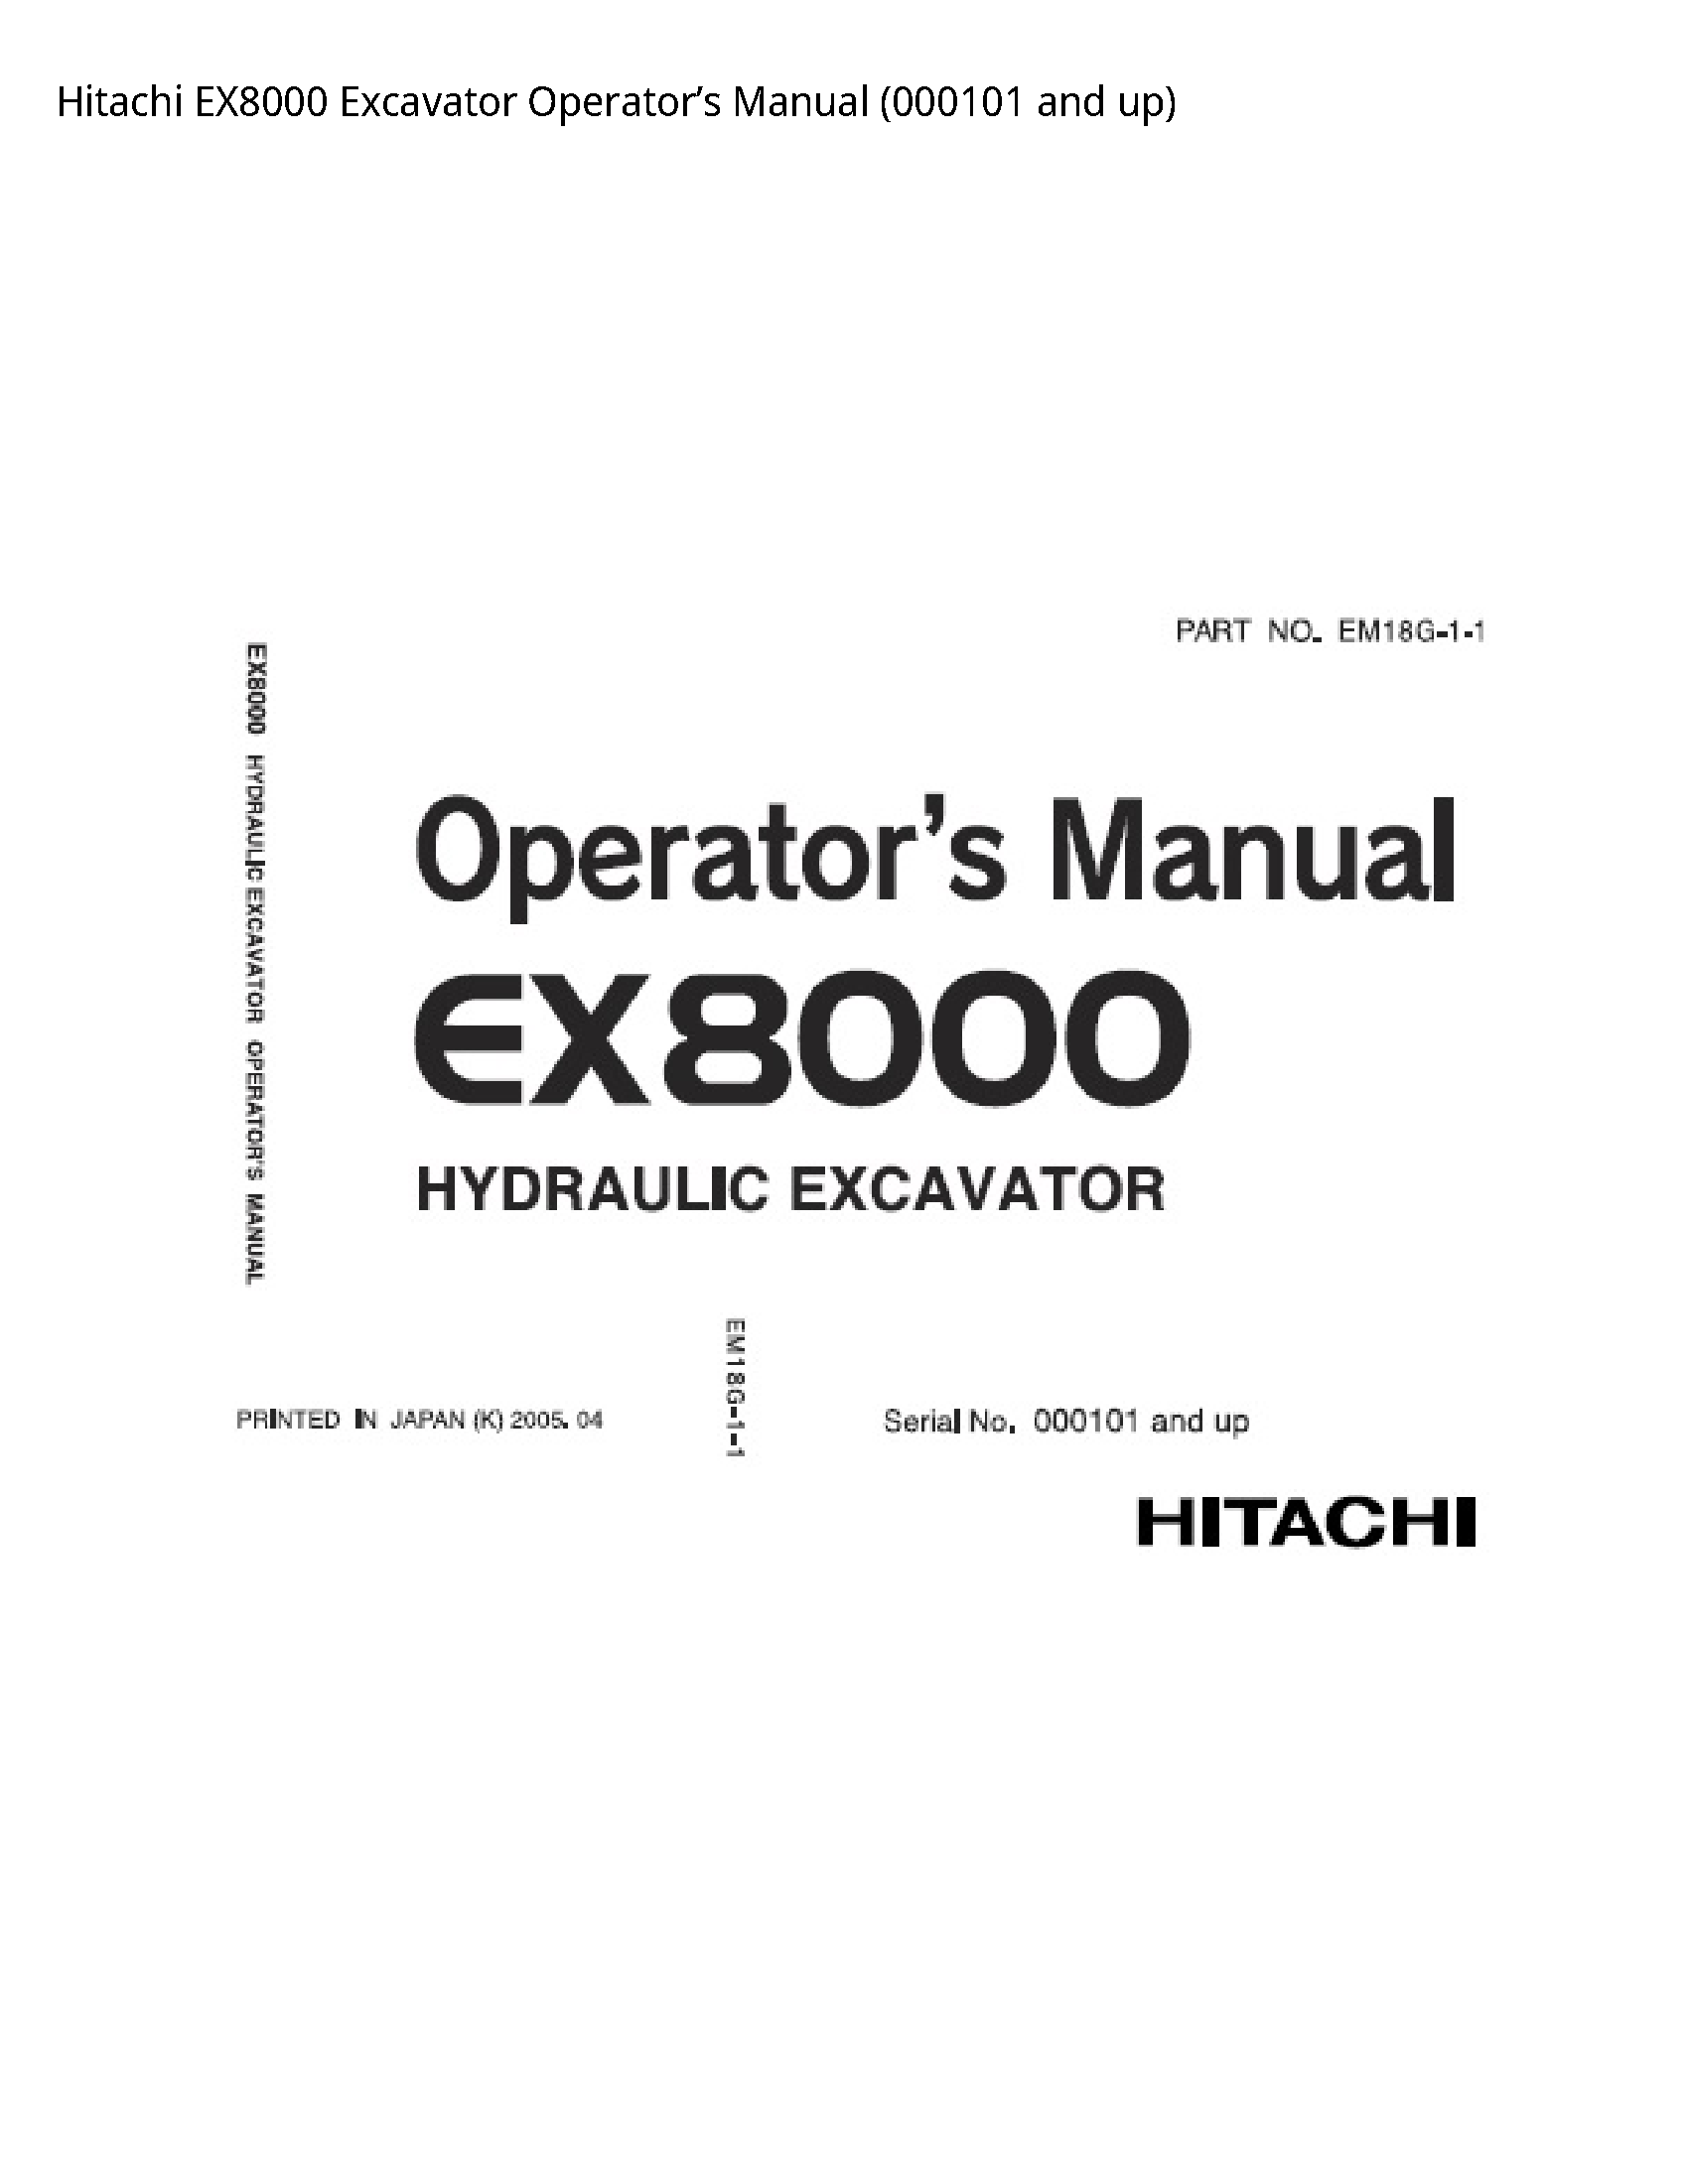 Hitachi EX8000 Excavator Operator’s manual